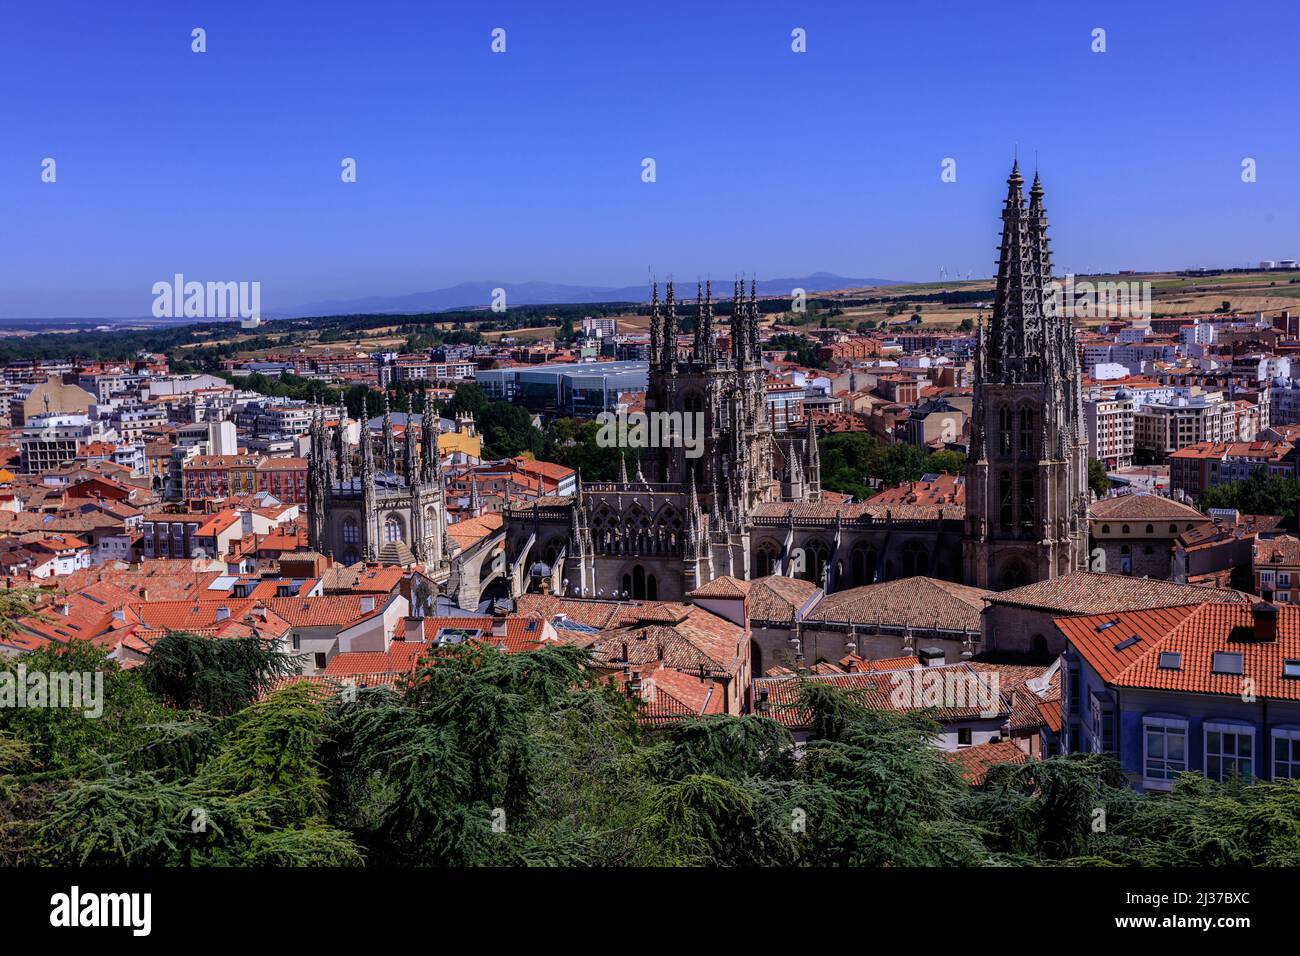 La Cattedrale di Santa Maria di Burgos, Spagna. Si tratta di una chiesa gotica, parte del sito patrimonio dell'umanità dell'UNESCO. Foto Stock